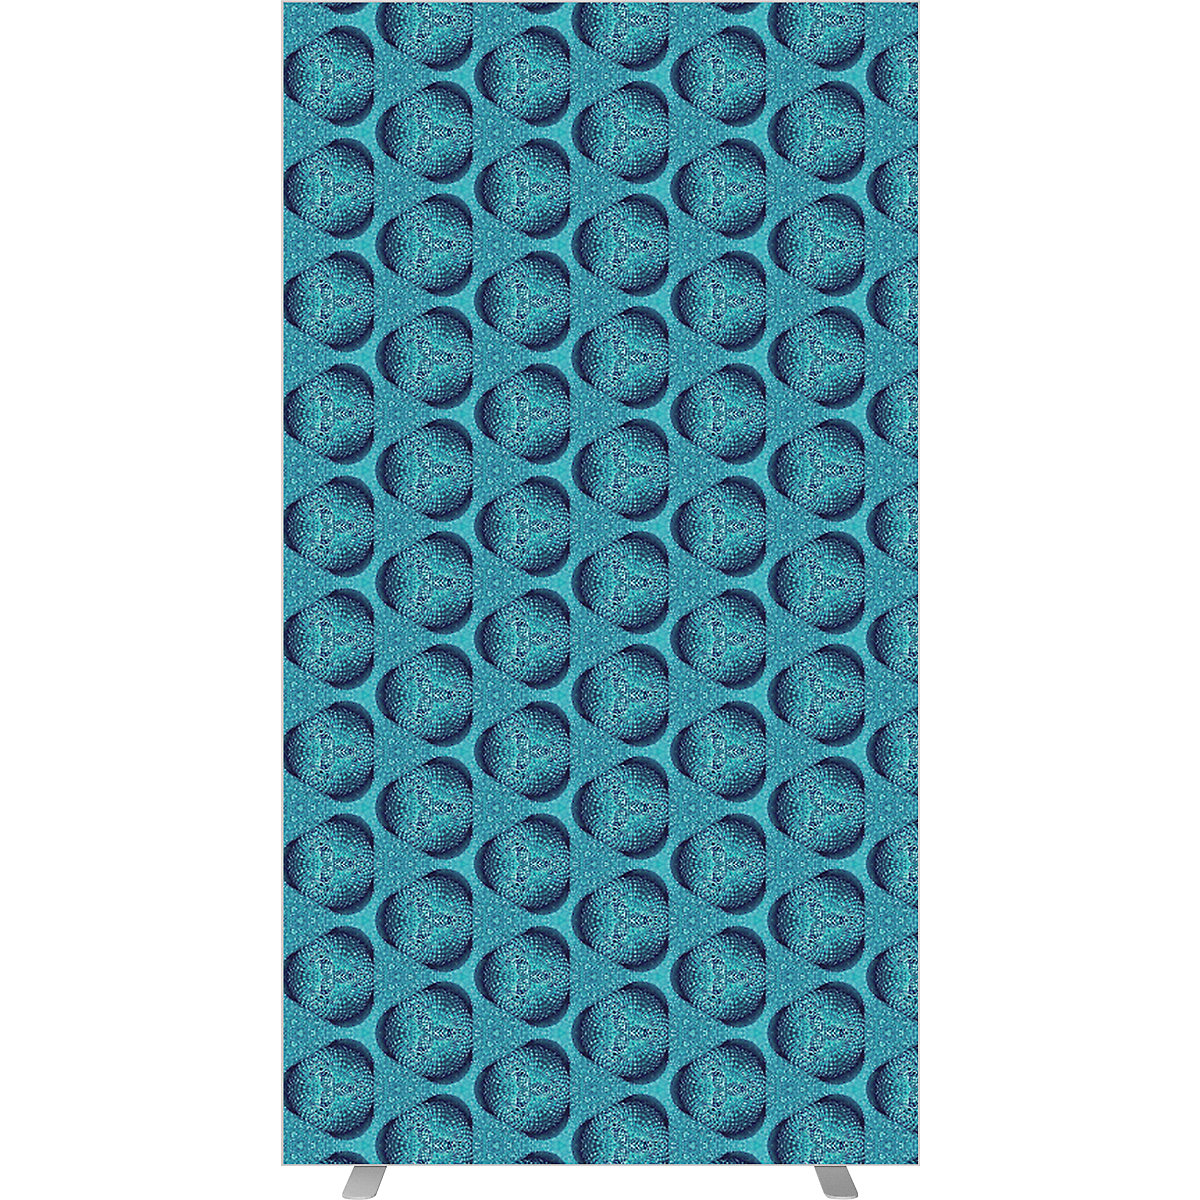 Cloison easyScreen, avec motif photo, modèle mosaïque bleue, largeur 940 mm-2